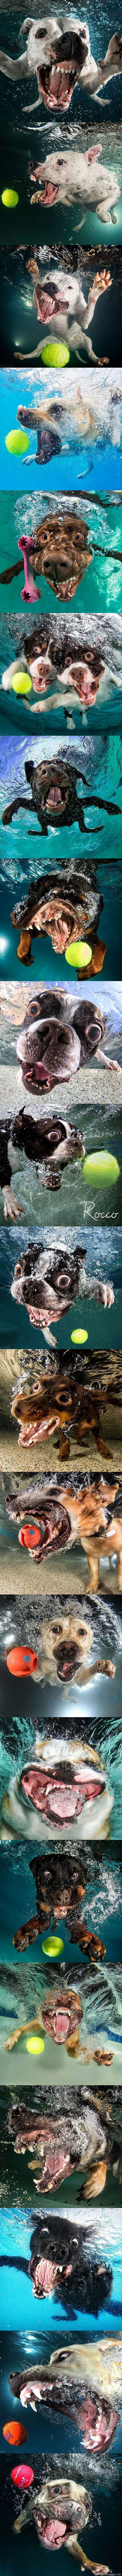 Sukeltelevia koiria - Seth Casteel on valokuvaaja, joka ikuistaa kameralleen suurimmaksi osaksi eläimiä. Mies on hyvin tunnettu projektistaan, missä hän valokuvaa vedenalaisia koiria.

Seth odottaa veden alla kameran kanssa ja houkuttelee koiria veteen lelun avulla. Innostuneiden koirien ilmeet ovat kieltämättä valokuvaamisen arvoisia.